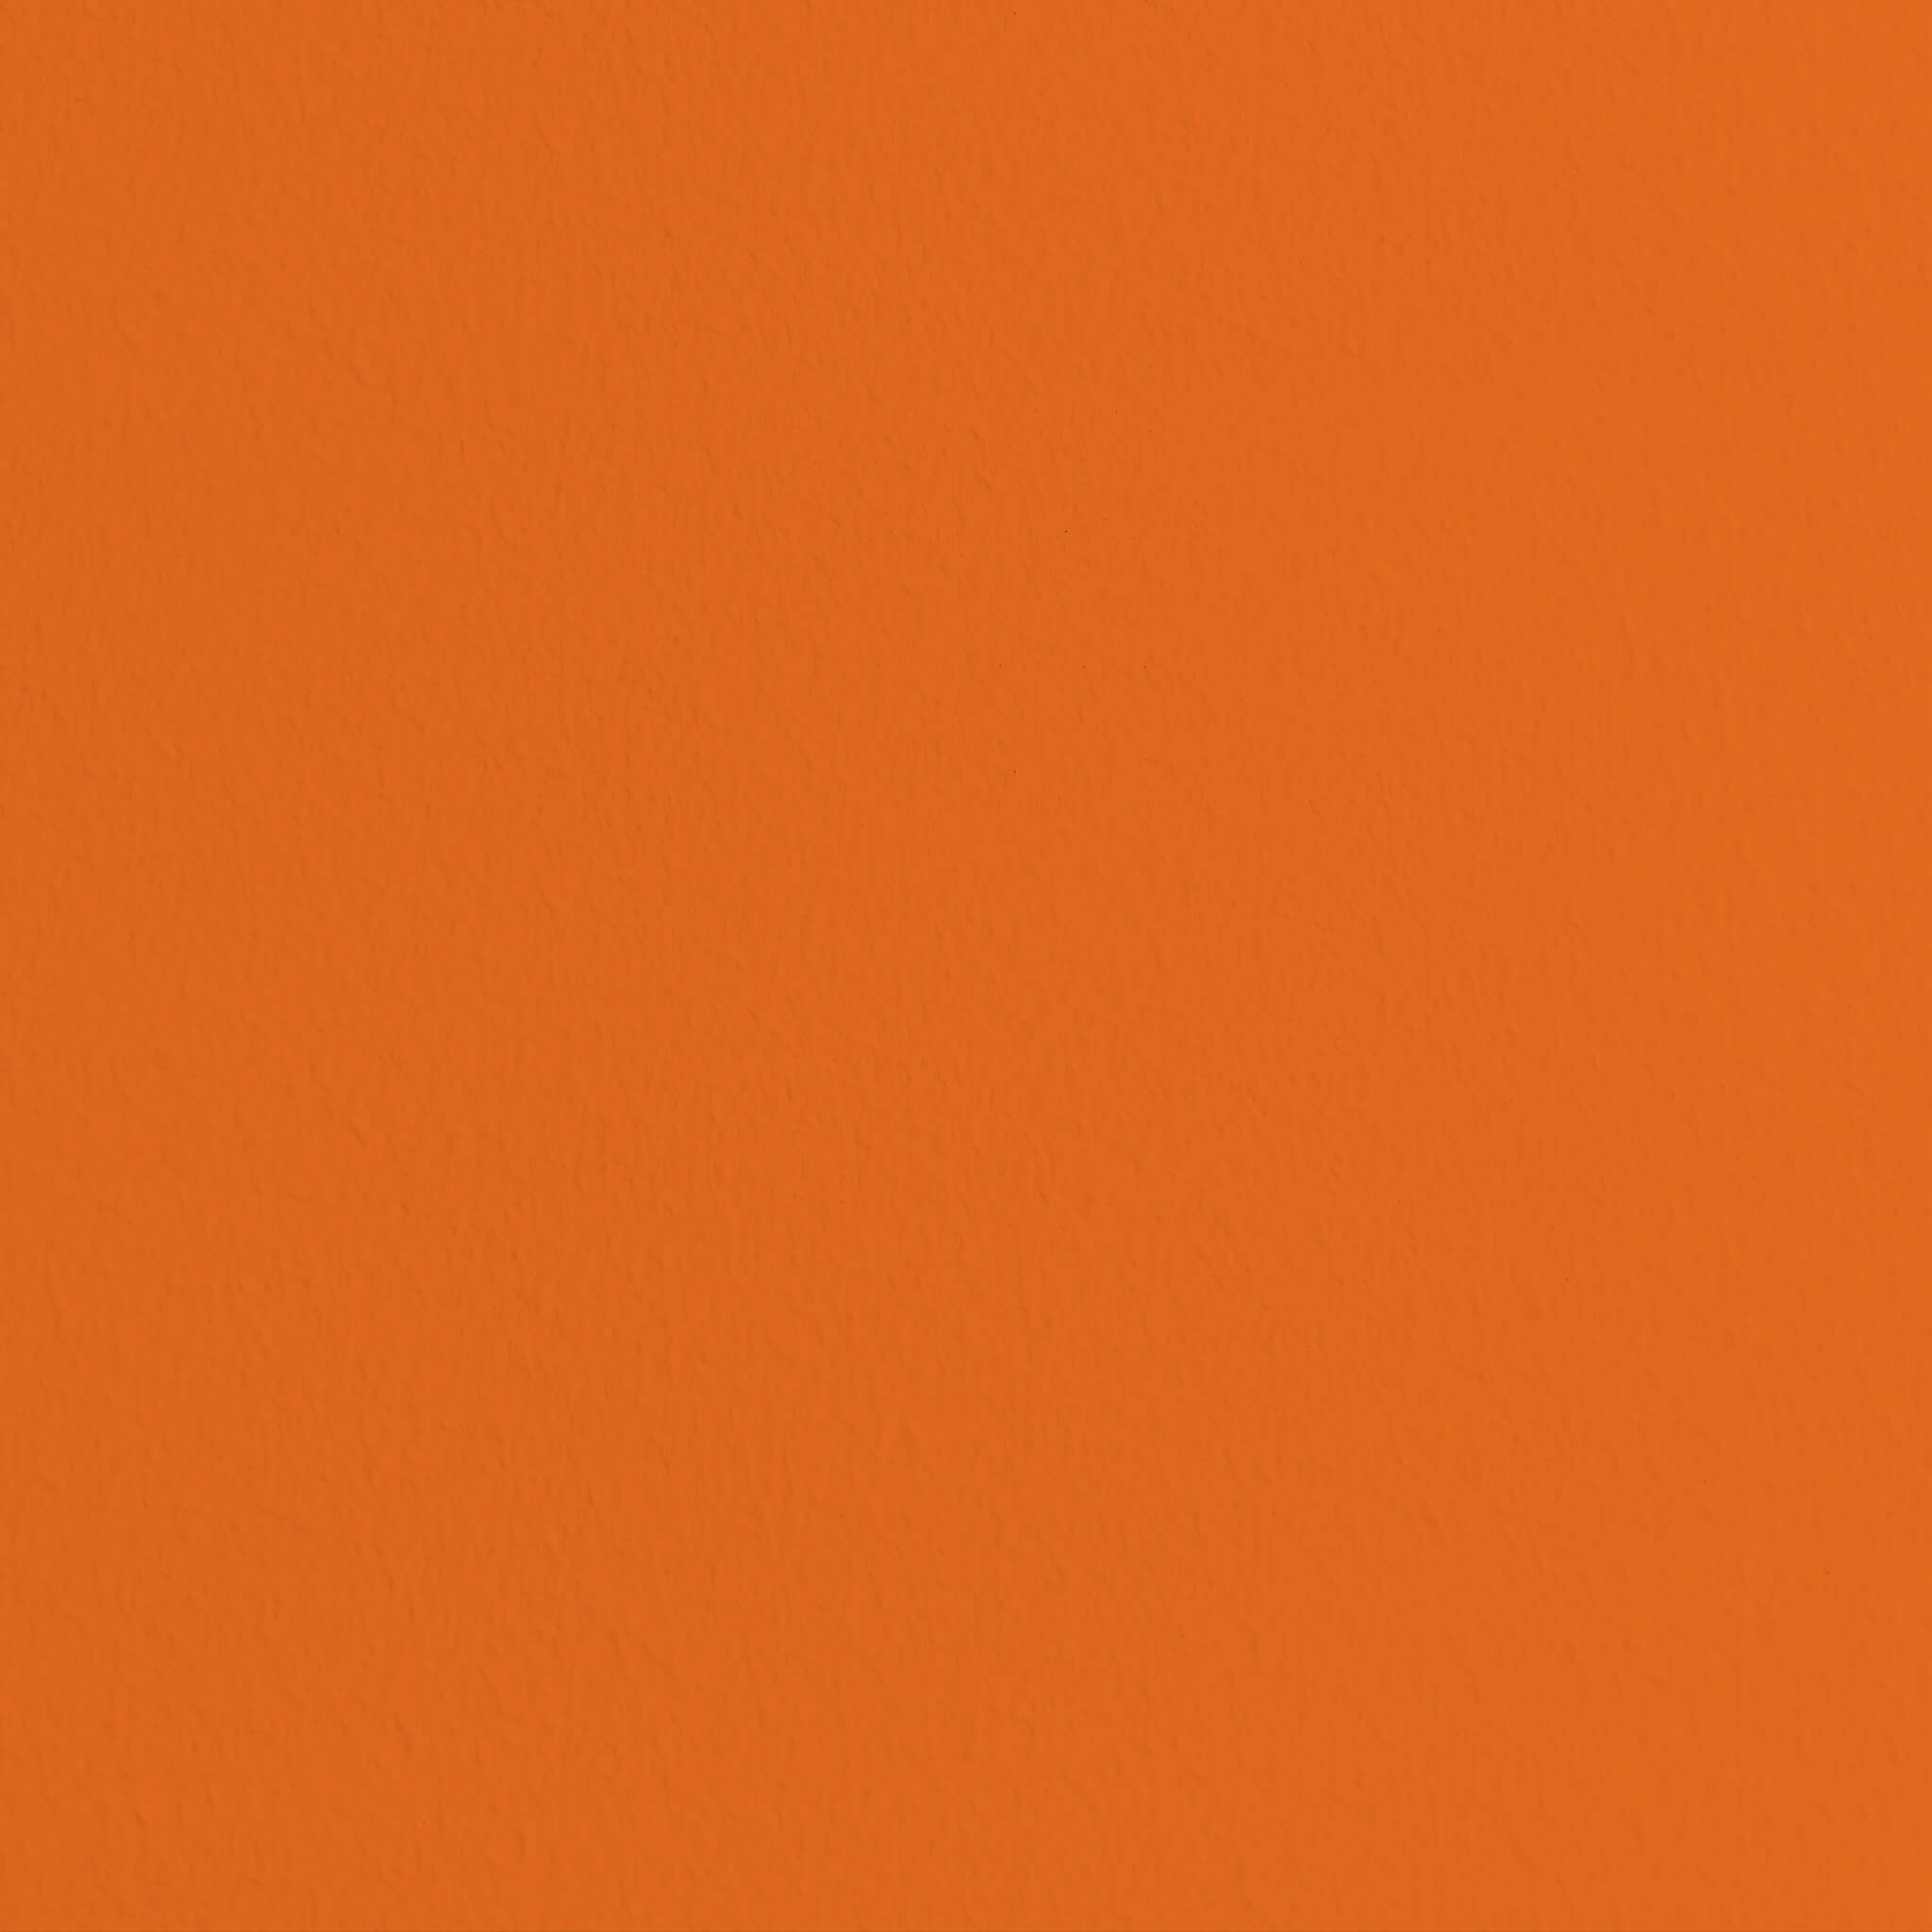 MissPompadour Orange mit Mandarine - Die Nützliche 1L